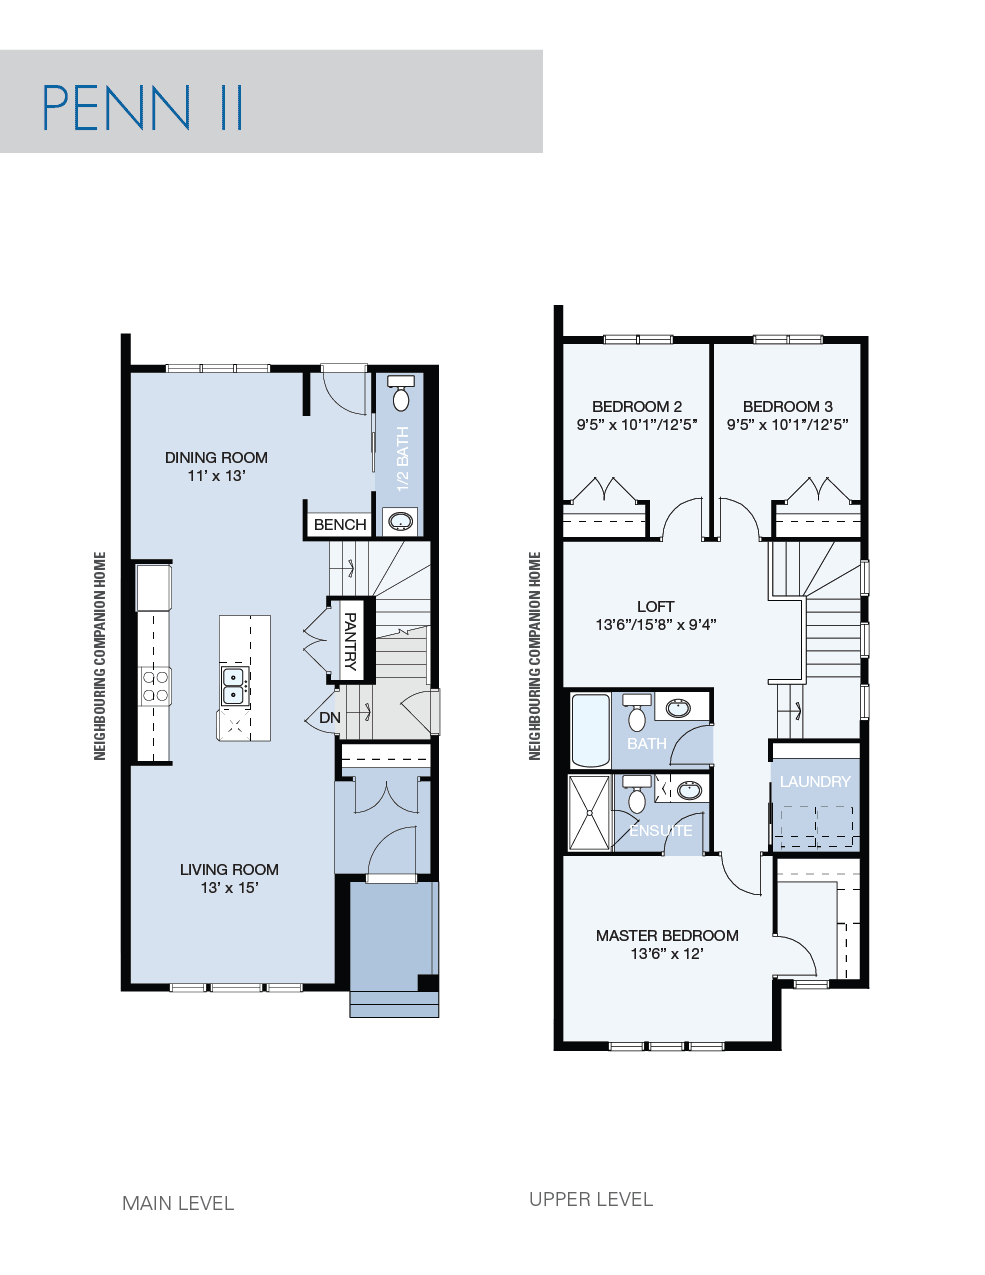 Penn II floorplan